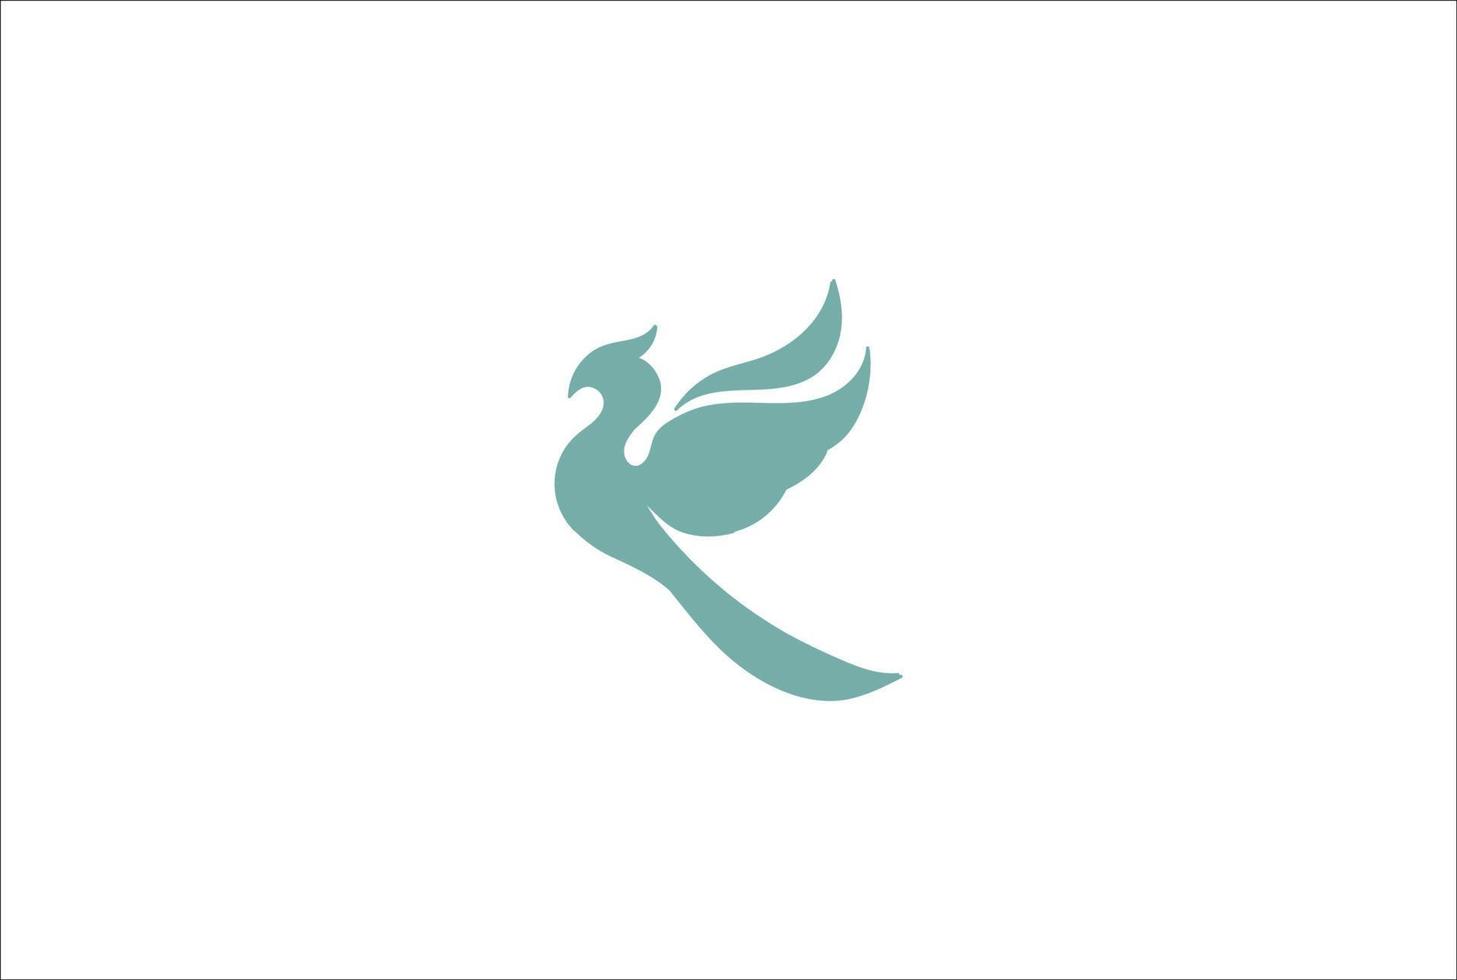 simples e minimalista pássaro voador águia falcão falcão fênix silhueta design de logotipo vetor